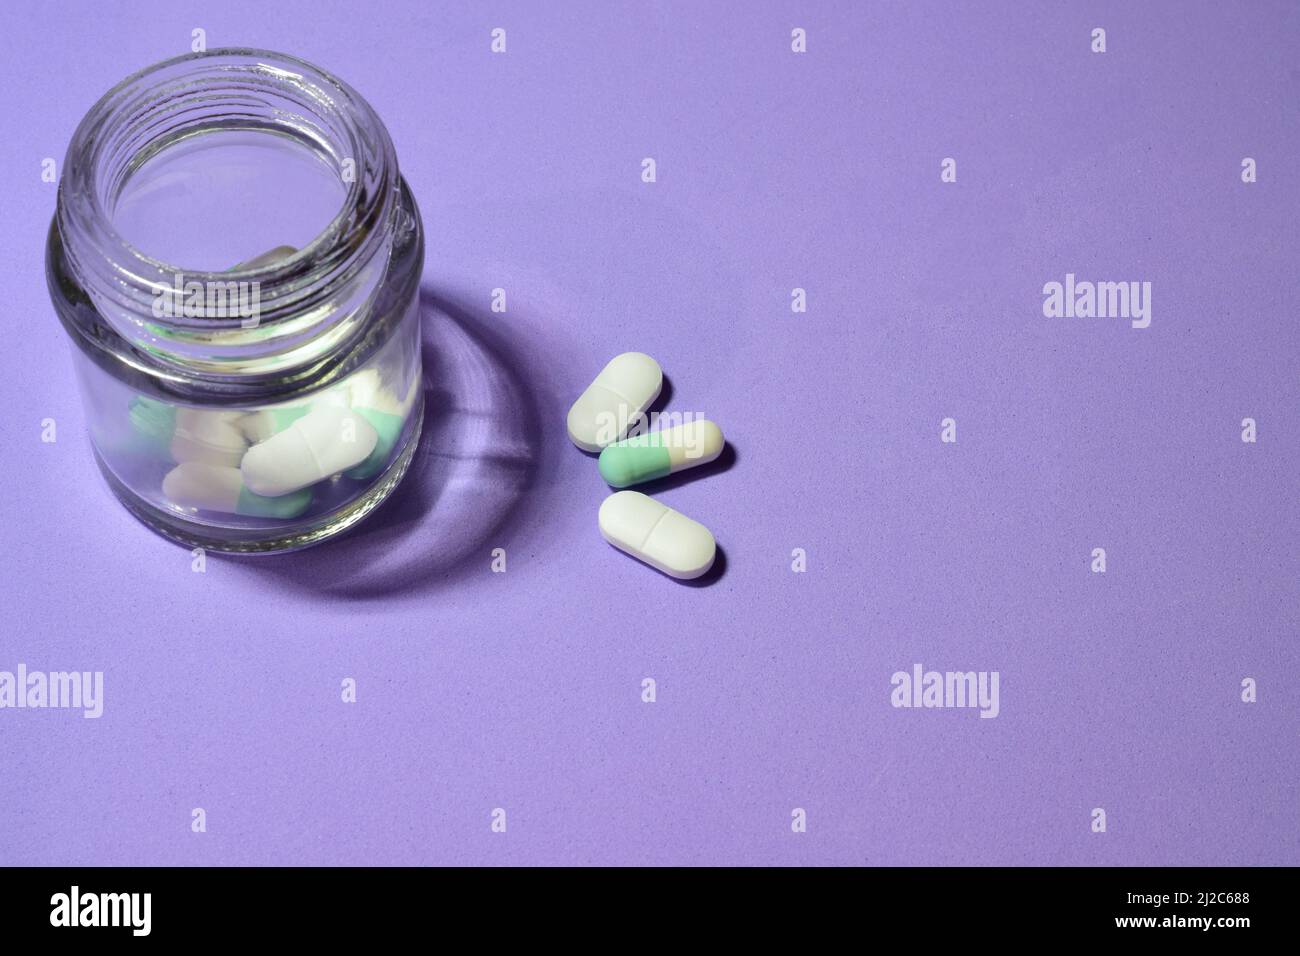 Einige Pillen und ein kleines Glas auf einem violetten Hintergrund Stockfoto